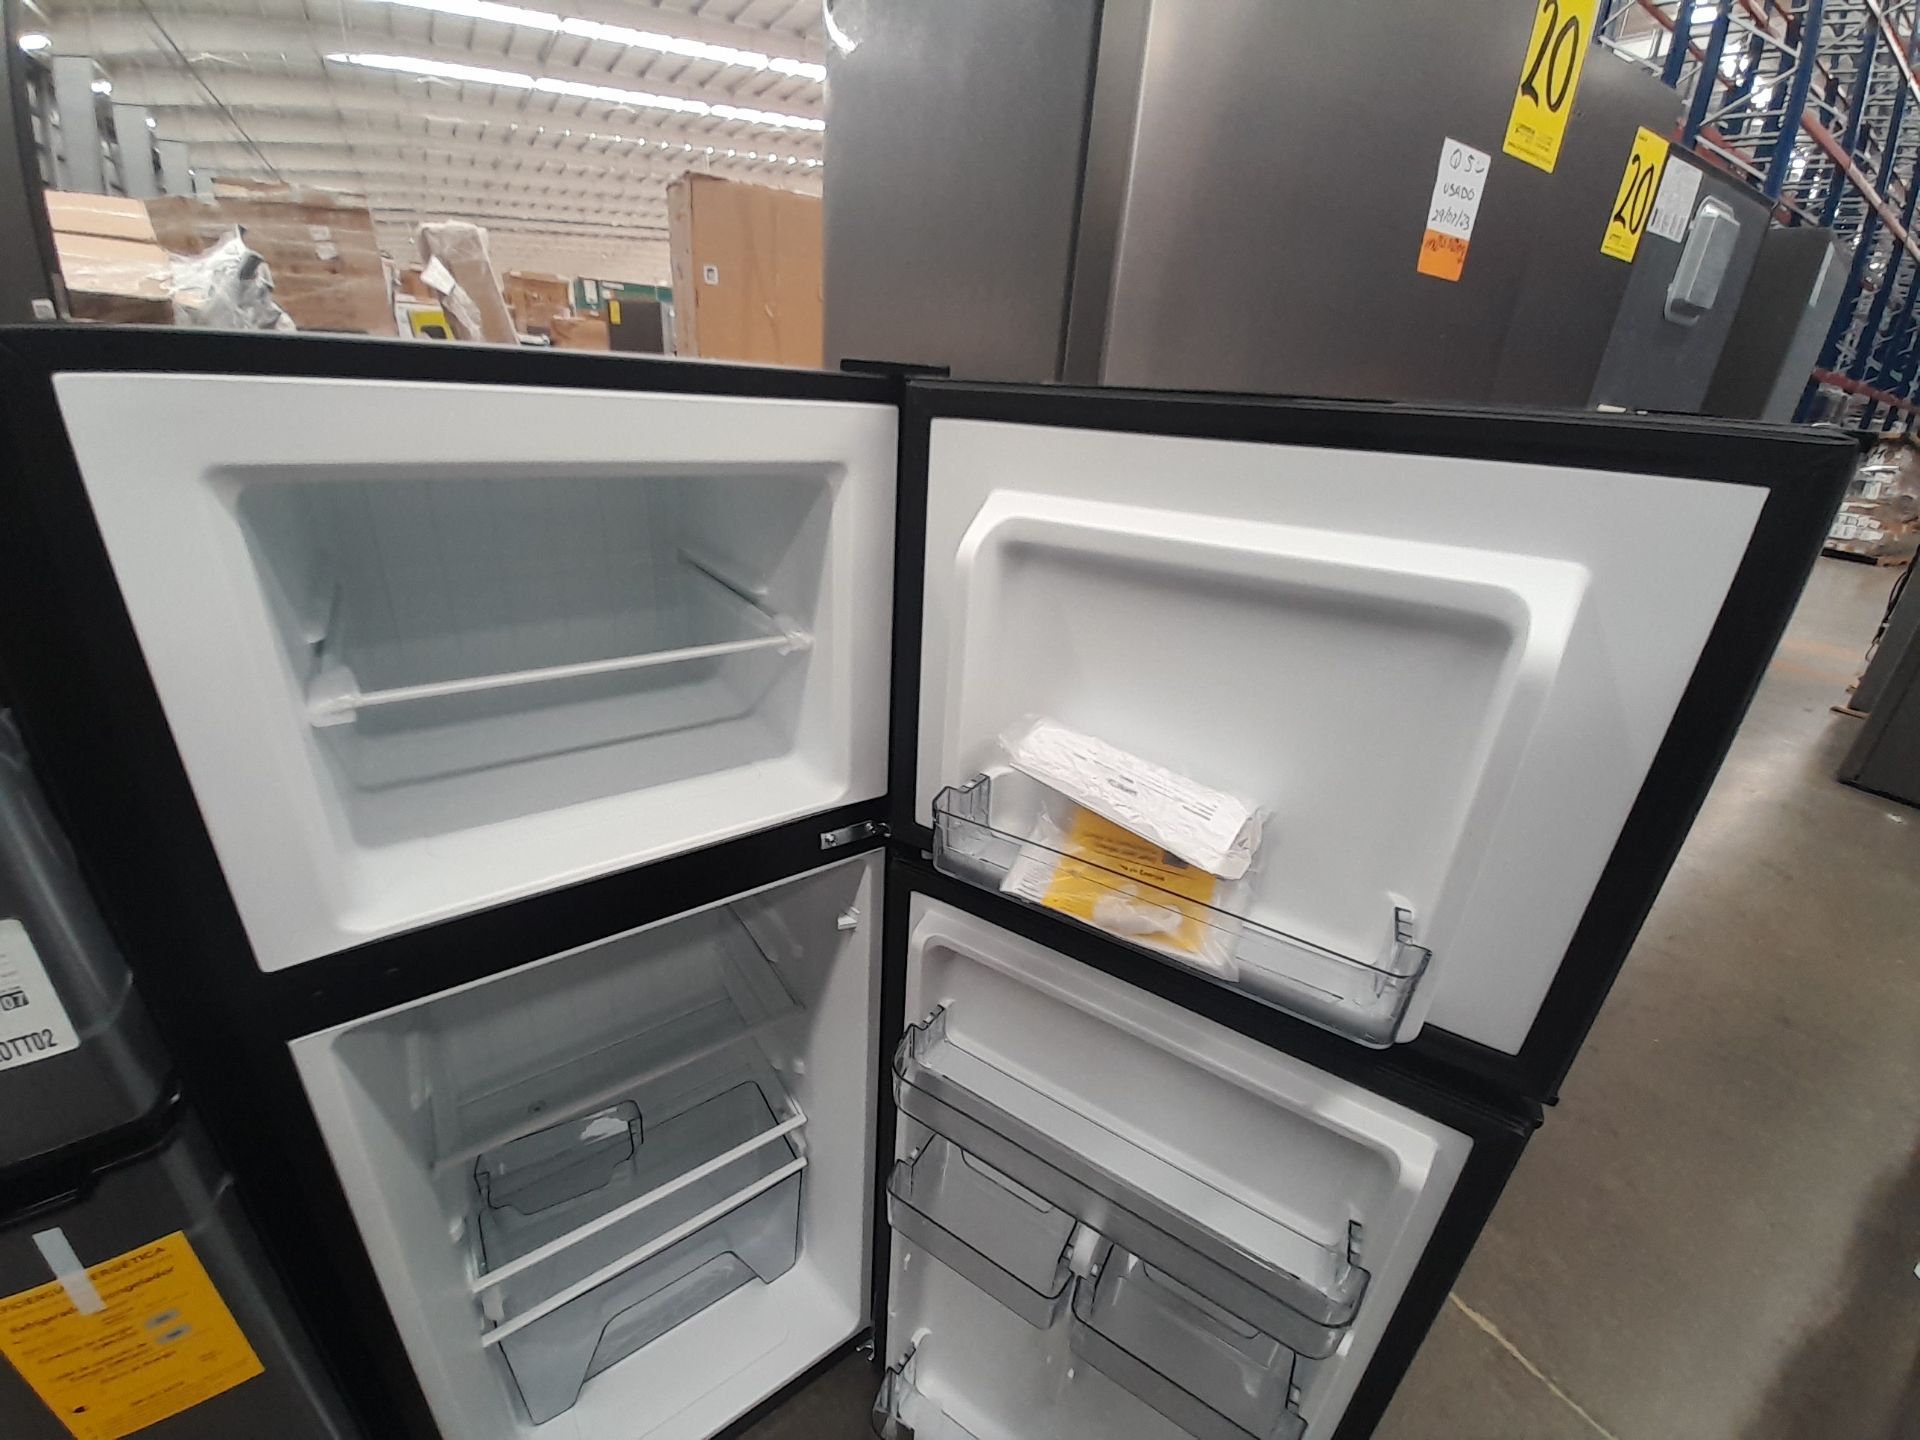 Lote de 2 refrigeradores contiene: 1 refrigerador Marca GALANZ, Modelo GLR55TS1, Serie ND, Colo - Image 4 of 8